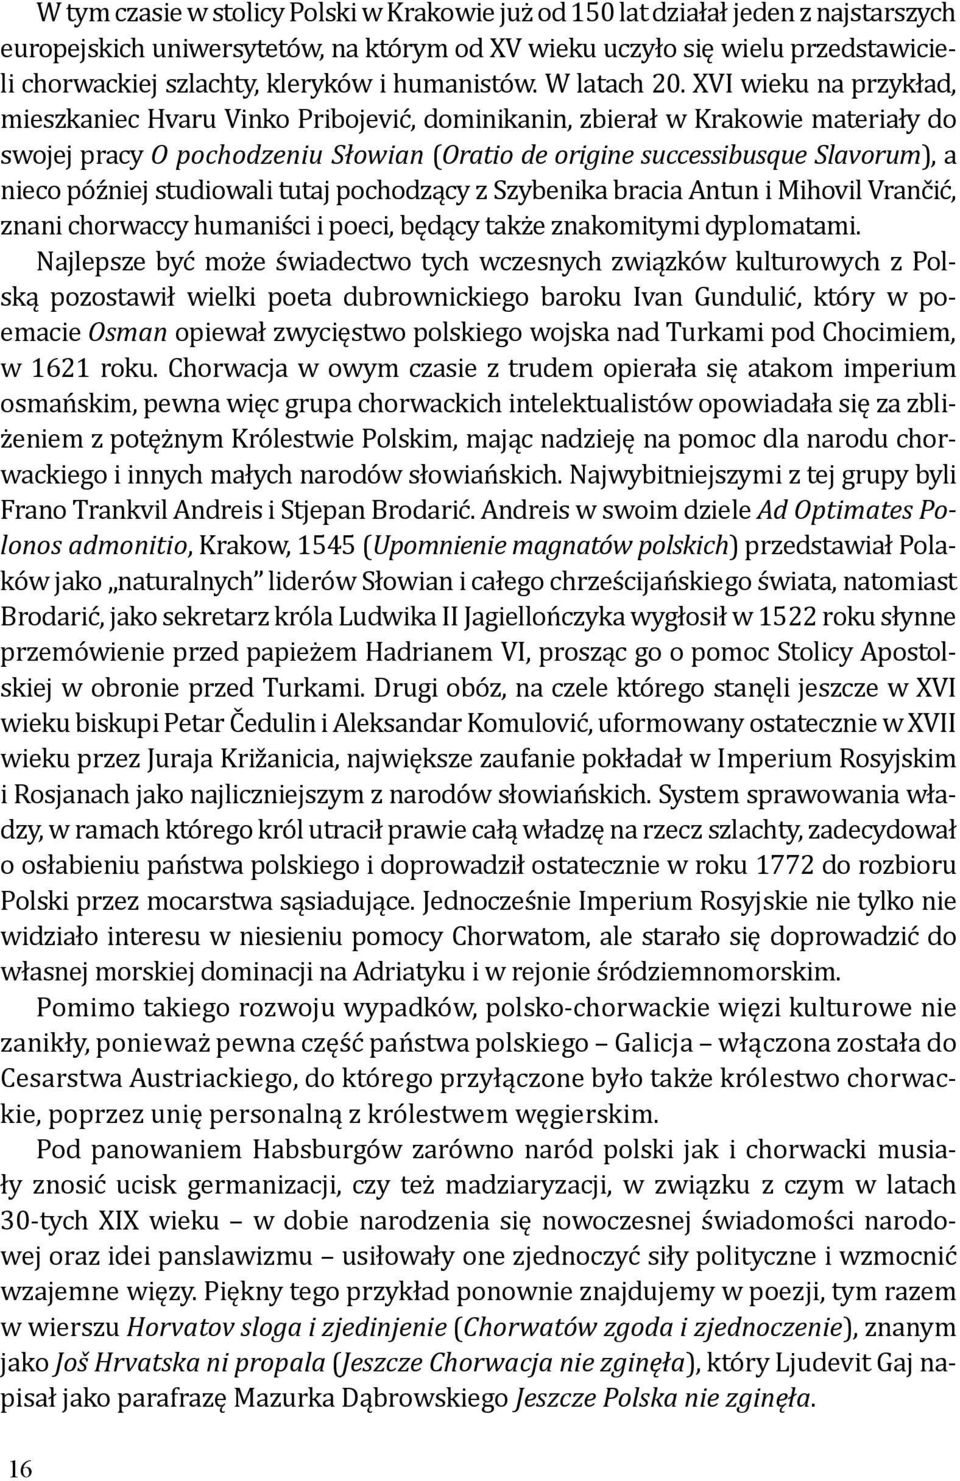 XVI wieku na przykład, mieszkaniec Hvaru Vinko Pribojević, dominikanin, zbierał w Krakowie materiały do swojej pracy O pochodzeniu Słowian (Oratio de origine successibusque Slavorum), a nieco później